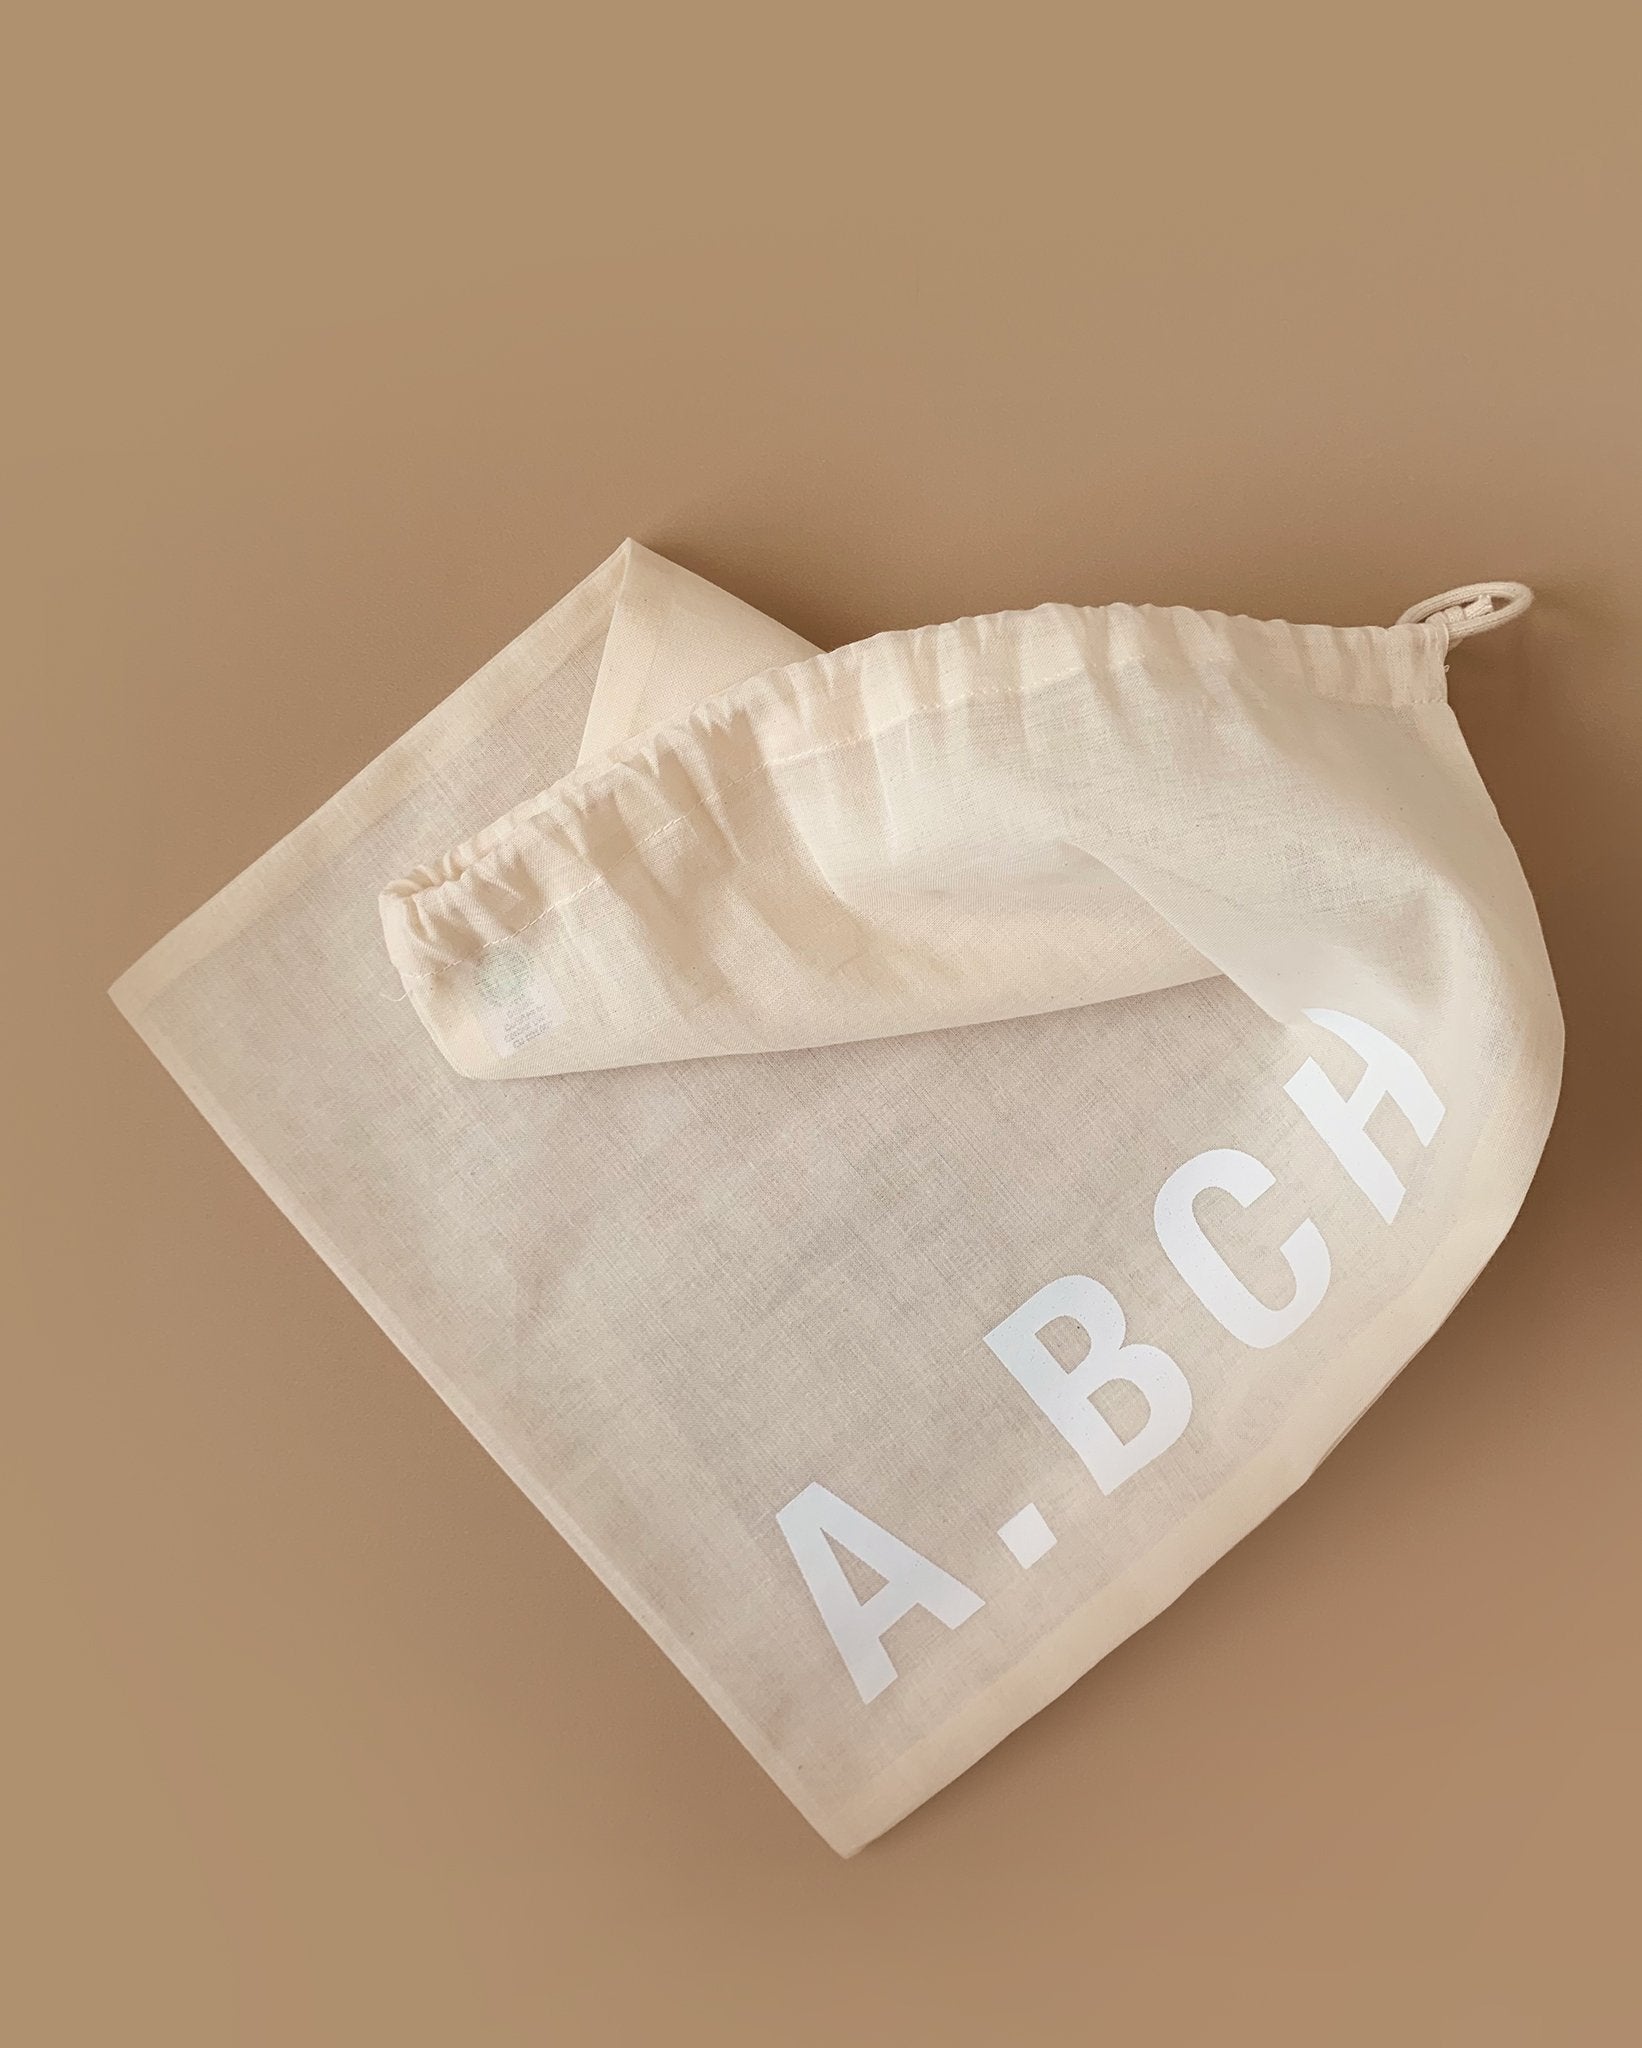 A.BCH Undyed Delicates Wash Bag